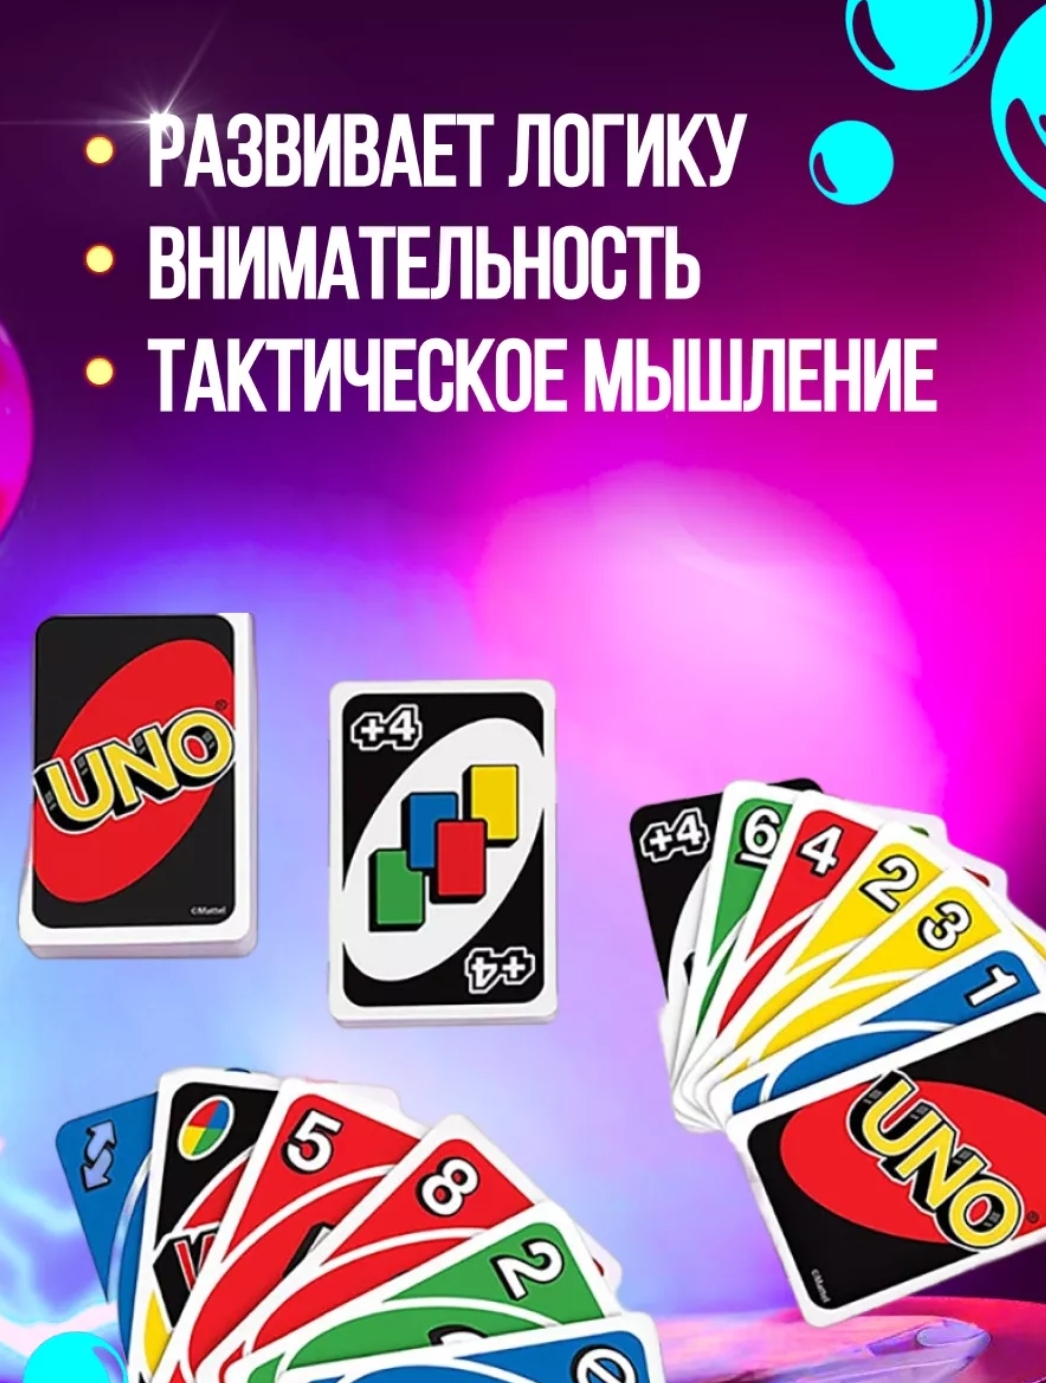 UNO карточная игра BalaToys настольная игра Уно - фото 4